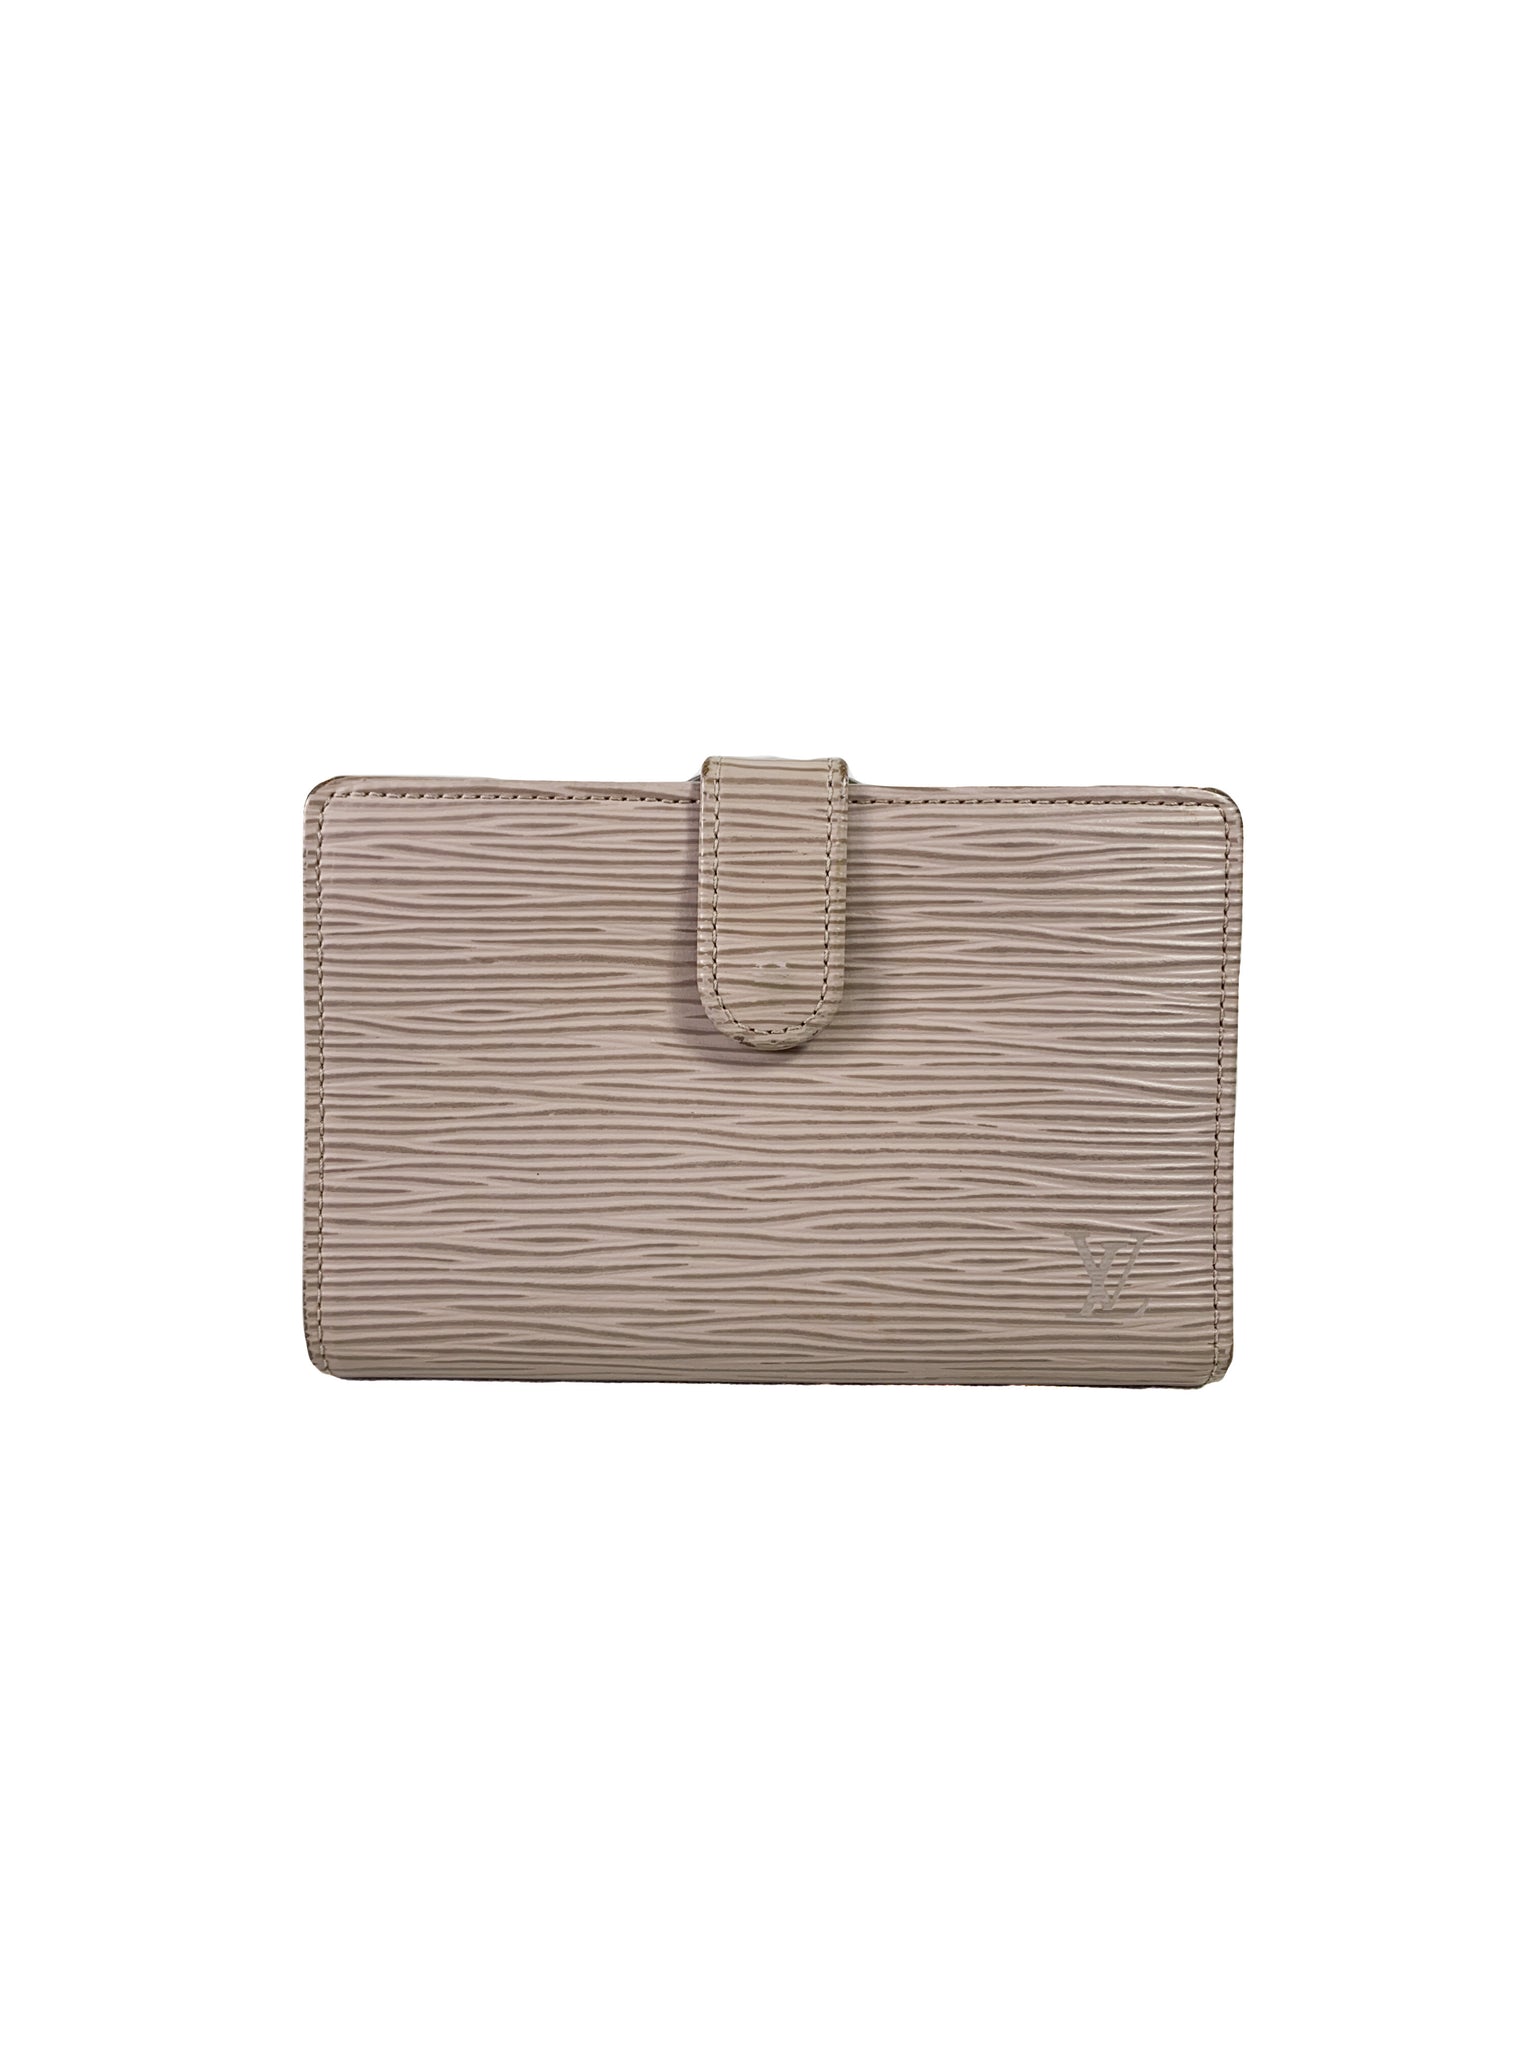 Louis Vuitton Epi leather Elastique wallet Grey/Lavender